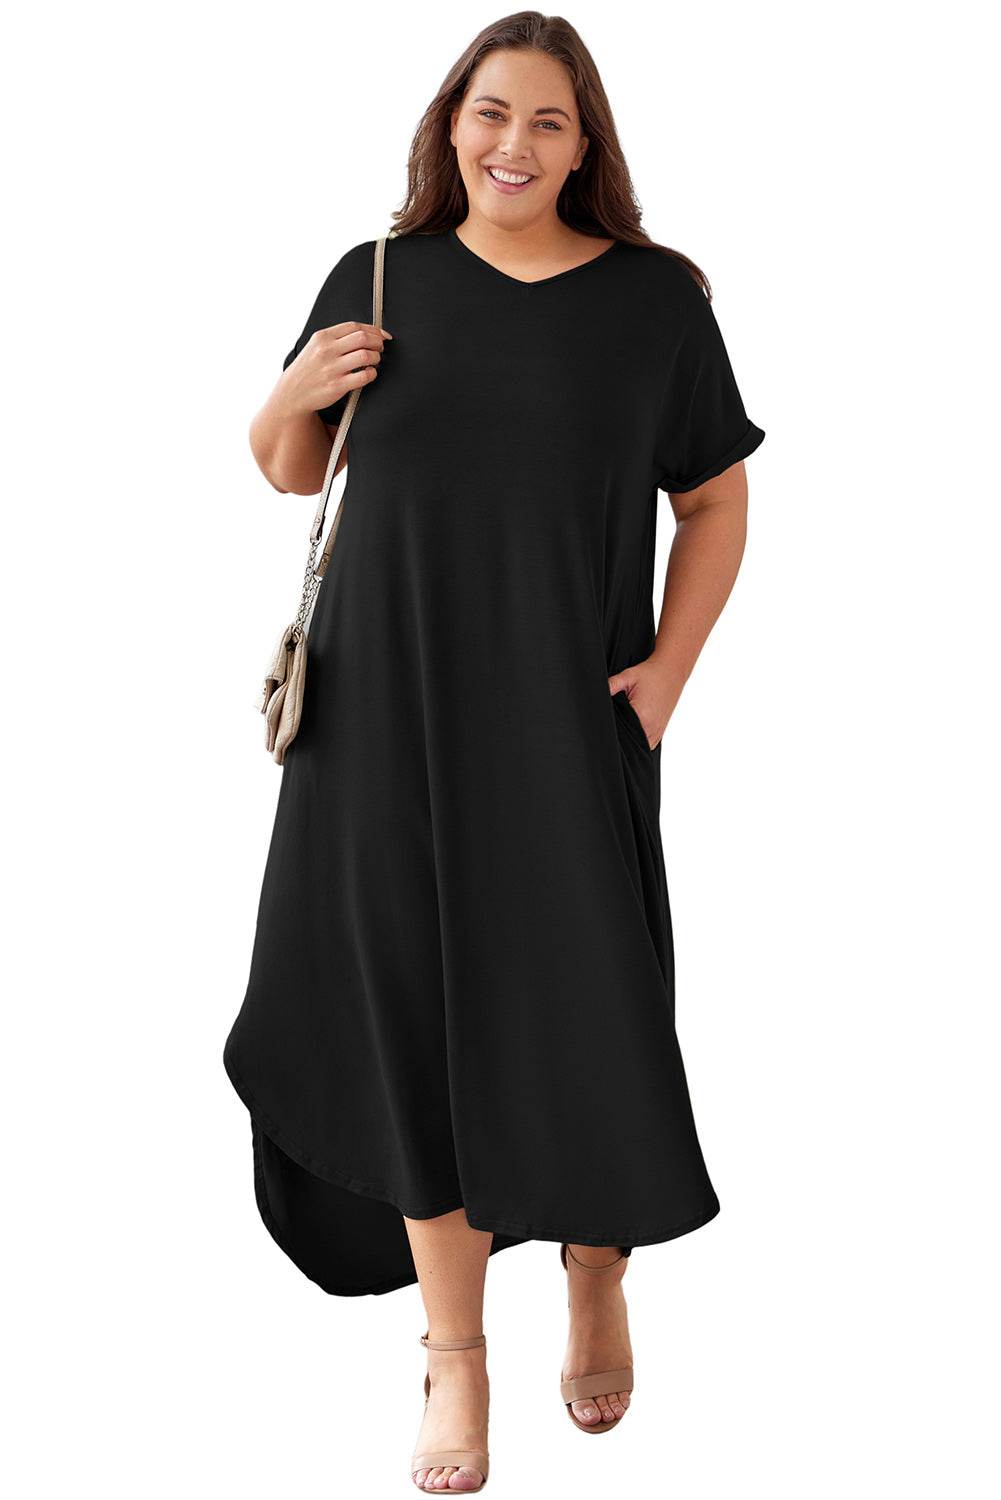 Crna maksi haljina s rolanim manžetama veličine V izreza